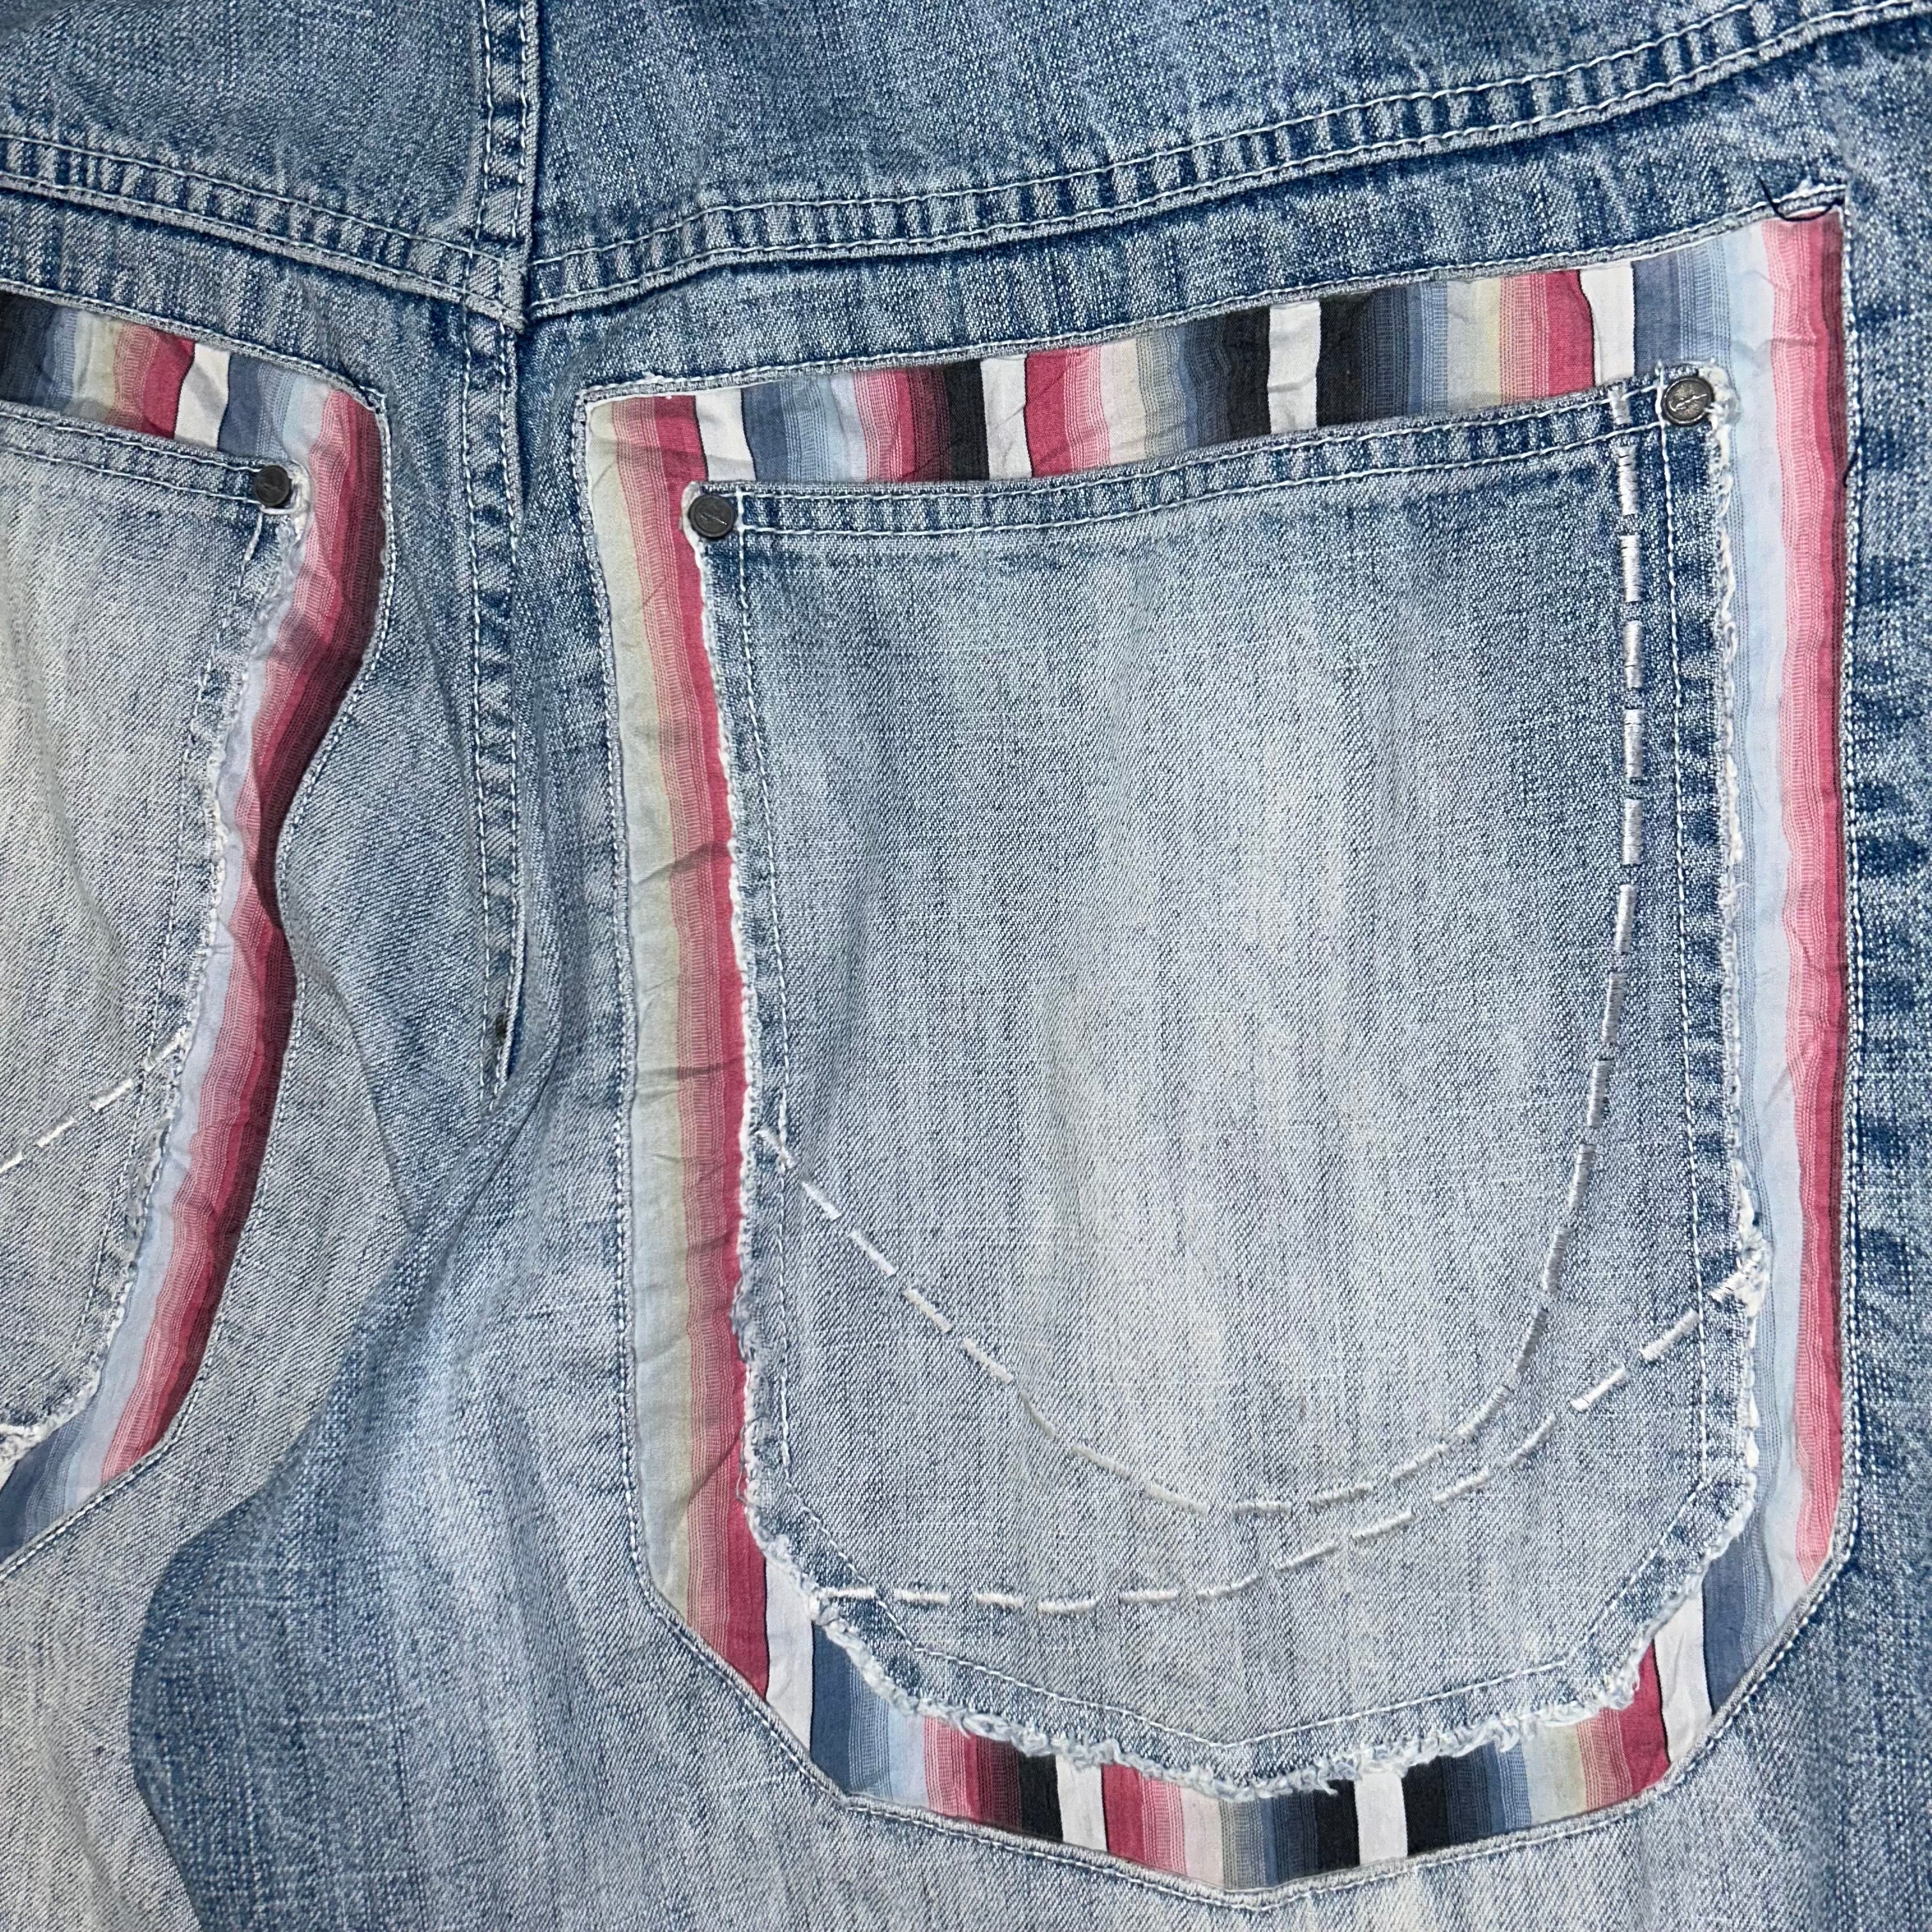 Baggy jeans Karl Kani Vintage (34 USA L) - oldstyleclothing